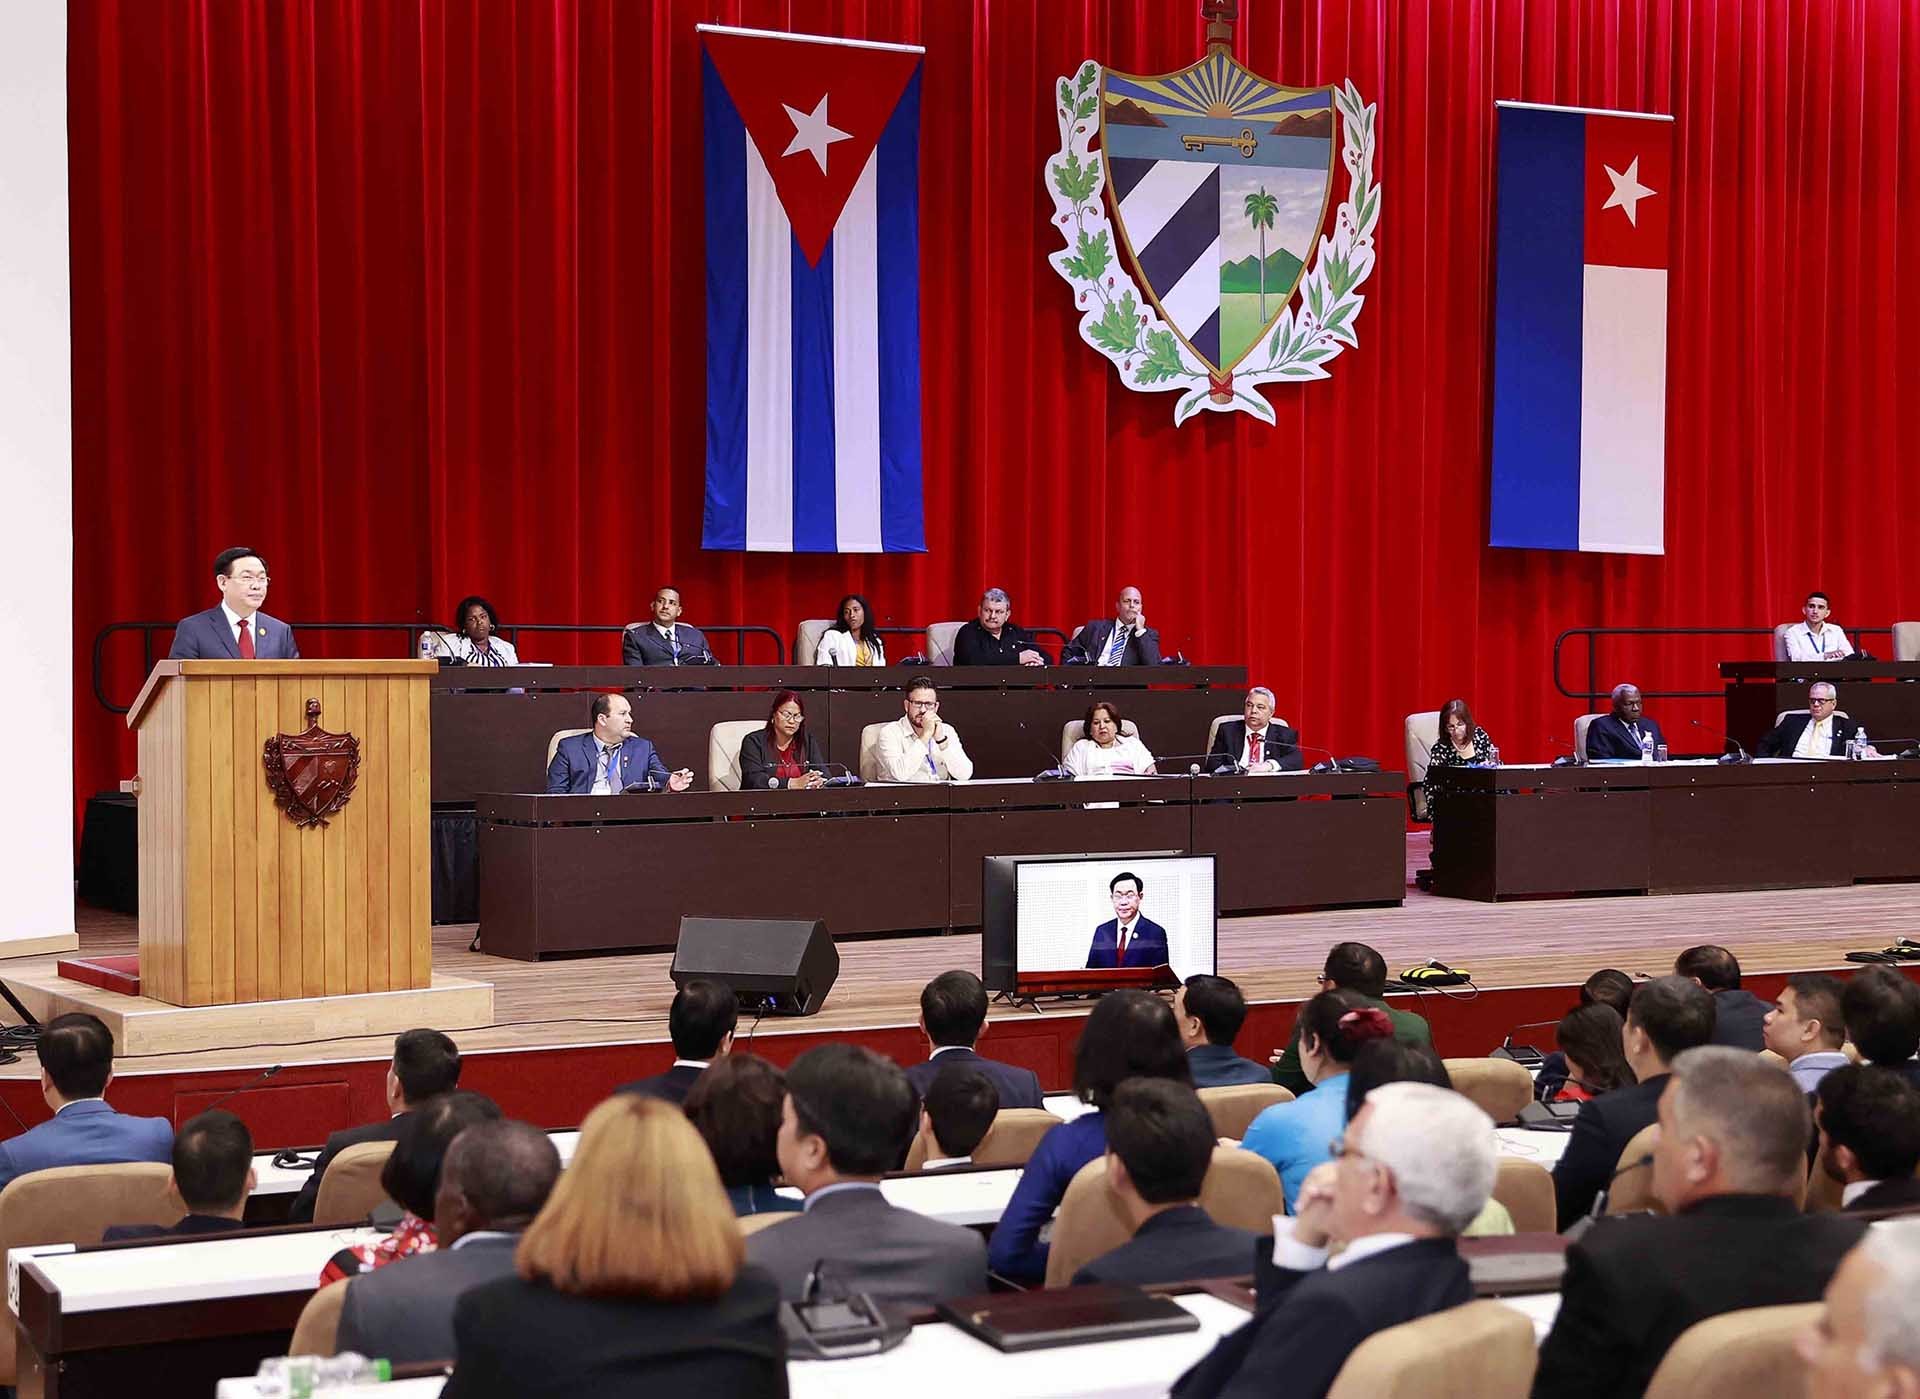 Chủ tịch Quốc hội Vương Đình Huệ dự và phát biểu tại phiên họp đặc biệt của Quốc hội Cuba khóa X và Lễ kỷ niệm 62 năm Chiến thắng Giron. (Nguồn: TTXVN)